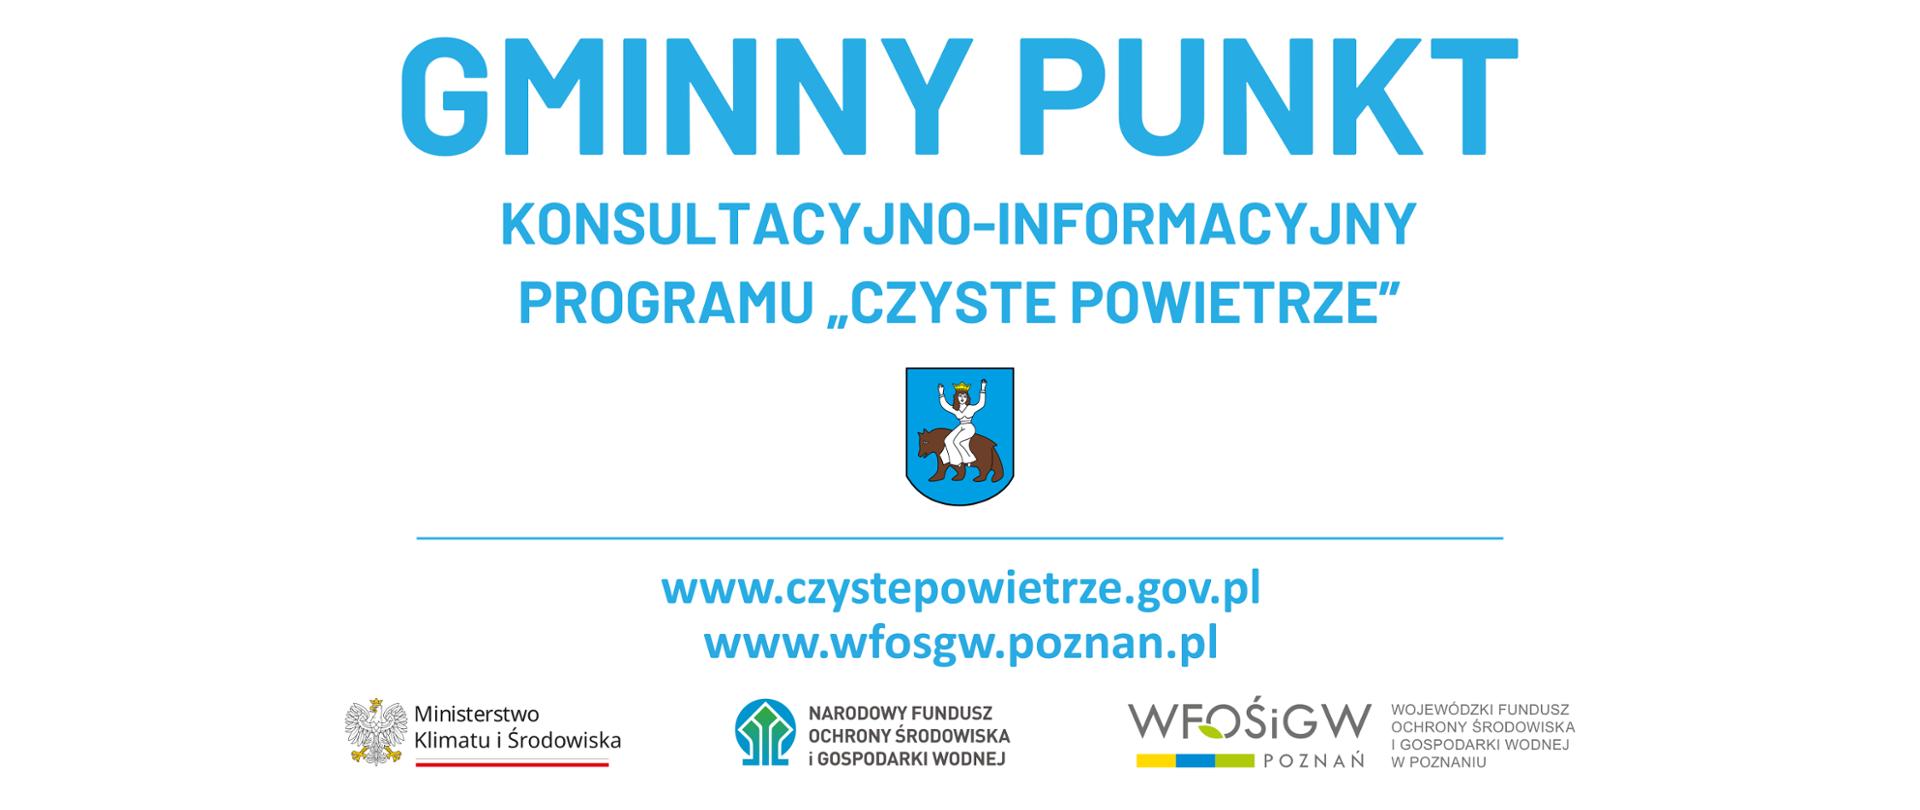 napis niebieską czcionką Gminny Gminny punkt konsultacyjno-informacyjny programu "Czyste powietrze" www.czystepowietrze.gov.pl www.wfosgw.poznan.pl i logotypy